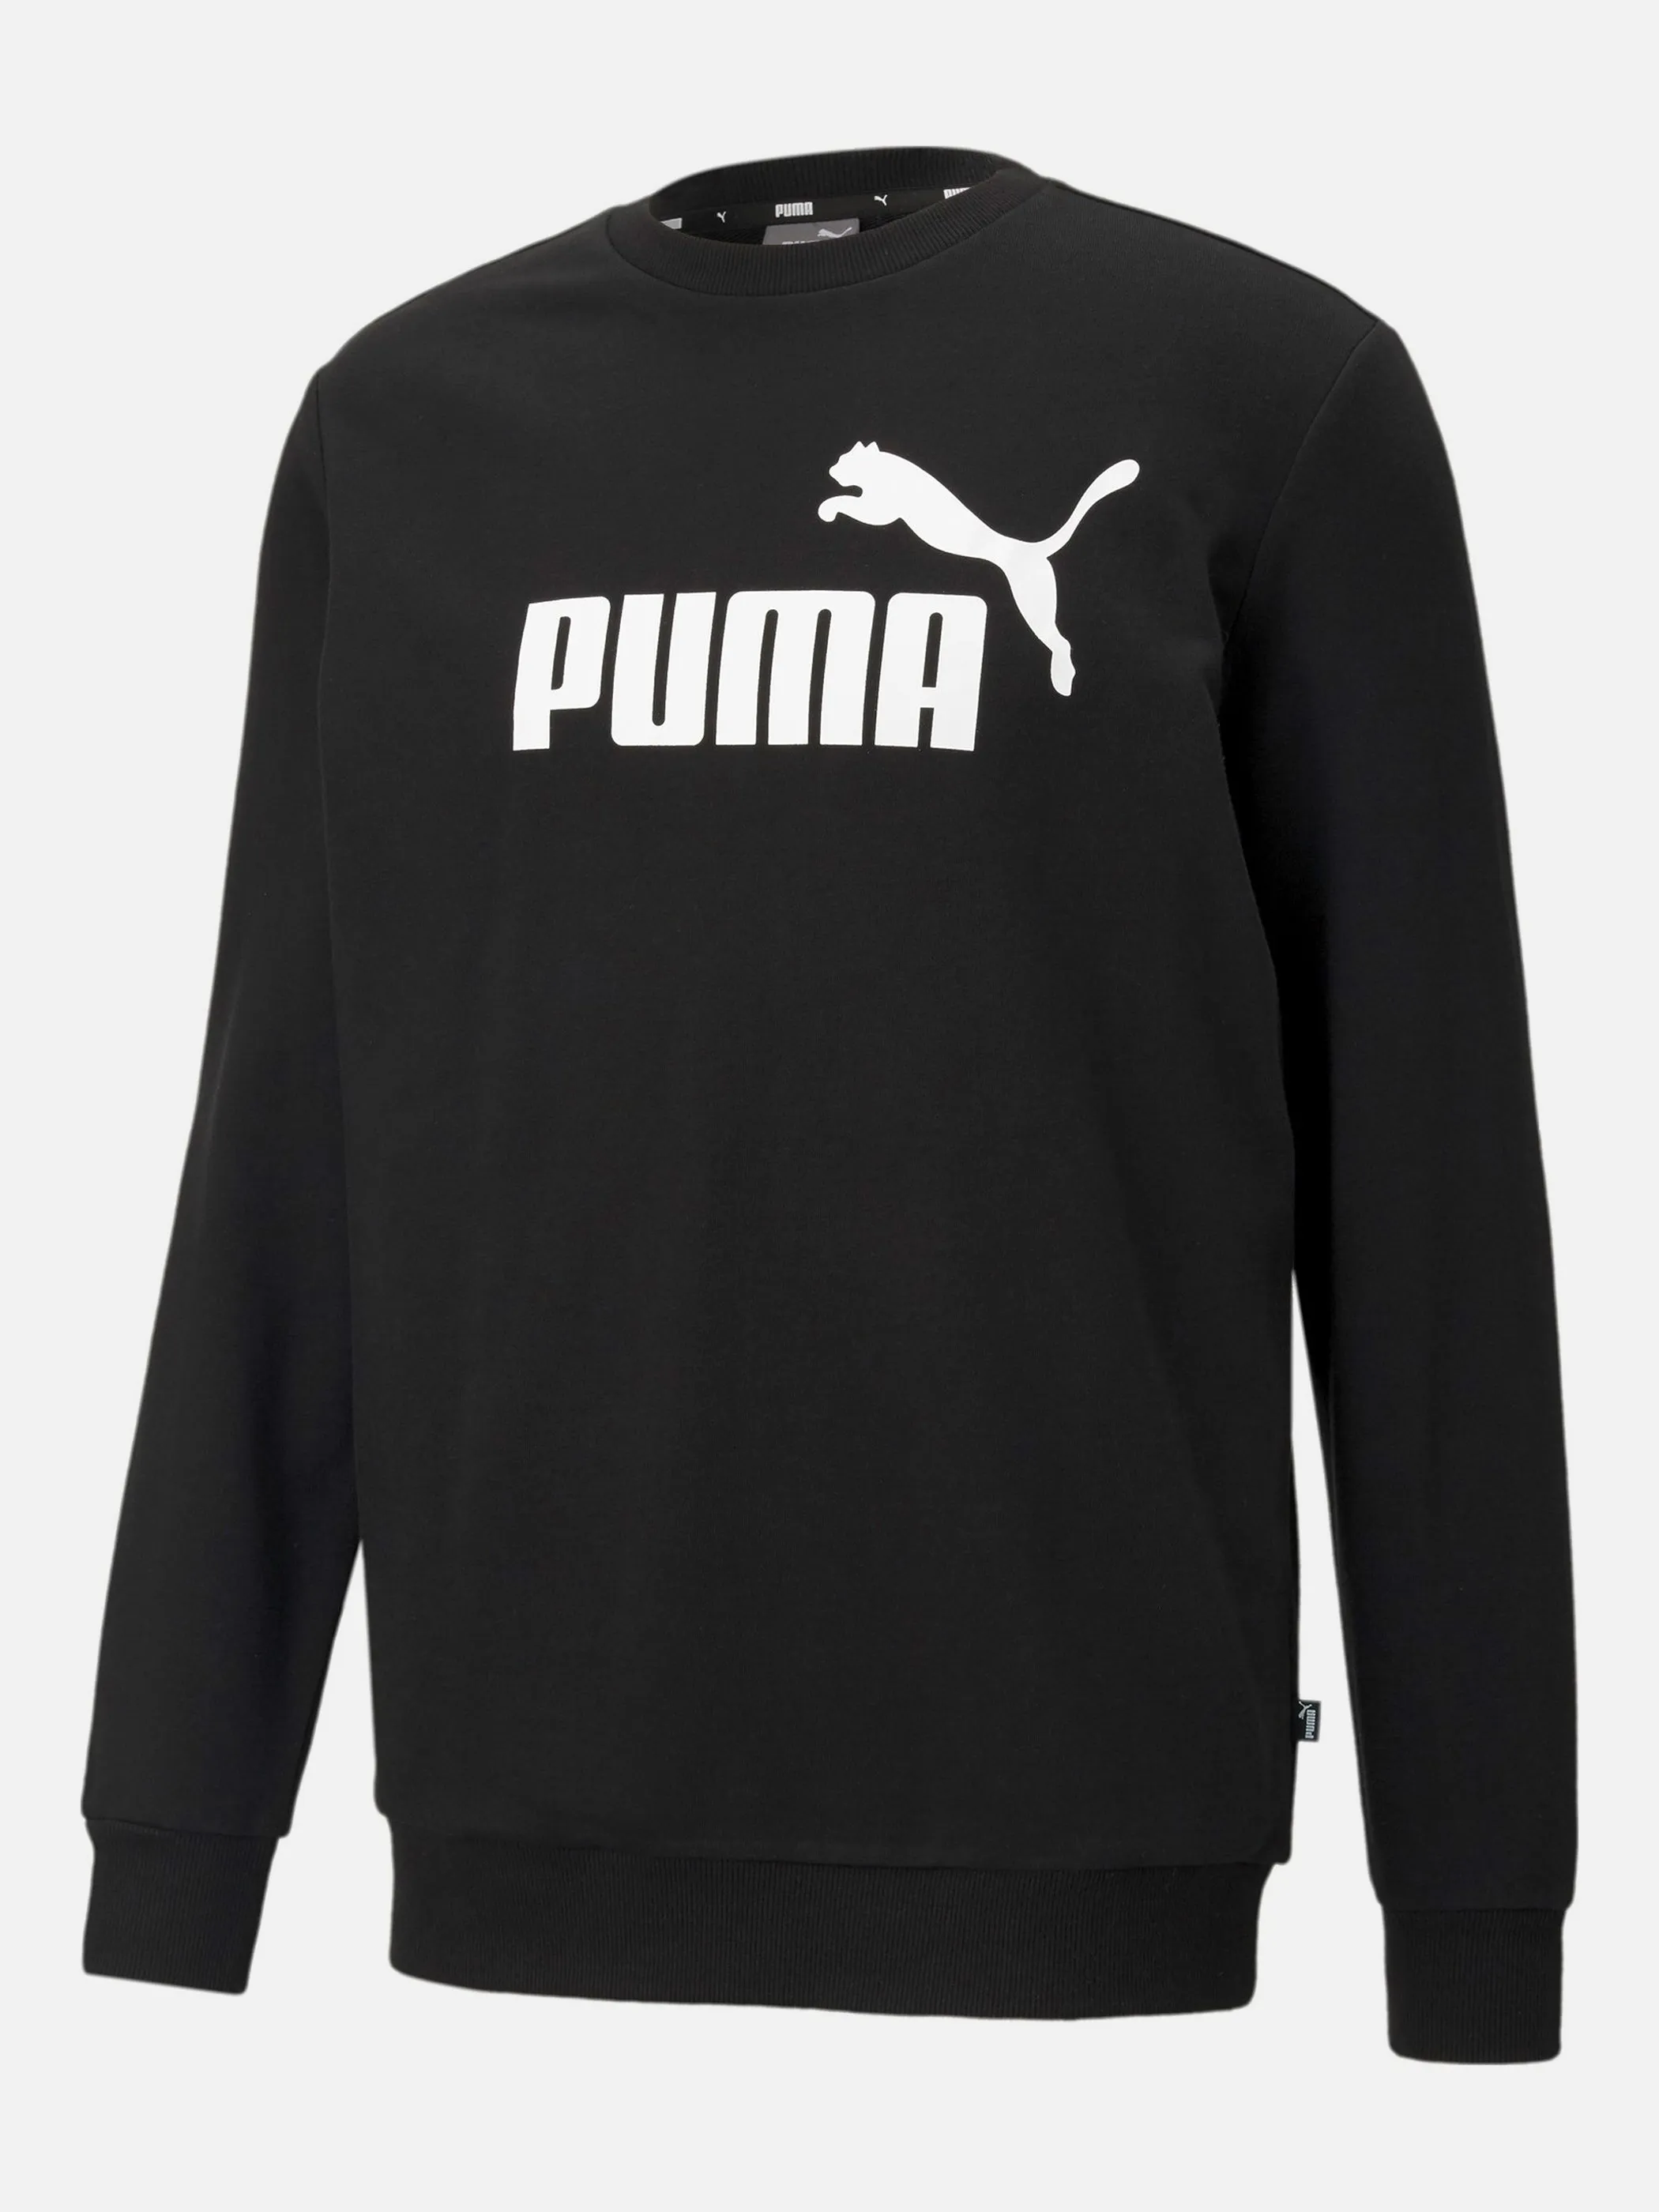 Puma 586680 He-Sweatshirt, Rundhals Schwarz 856657 01 1